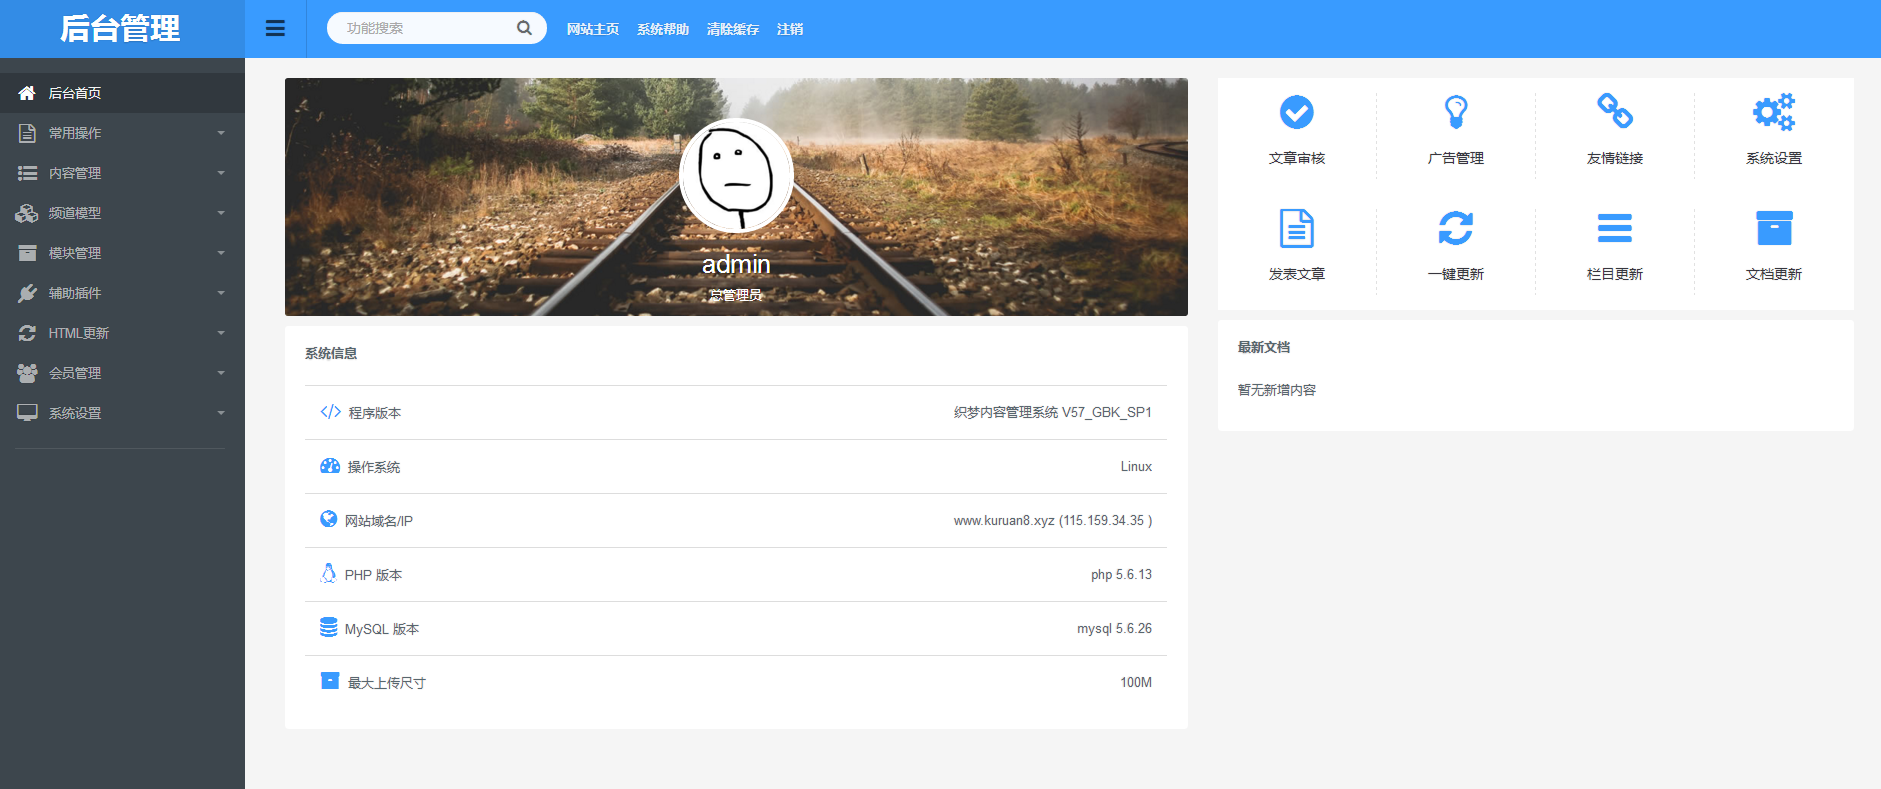 新版QQ娱乐网教程网模板